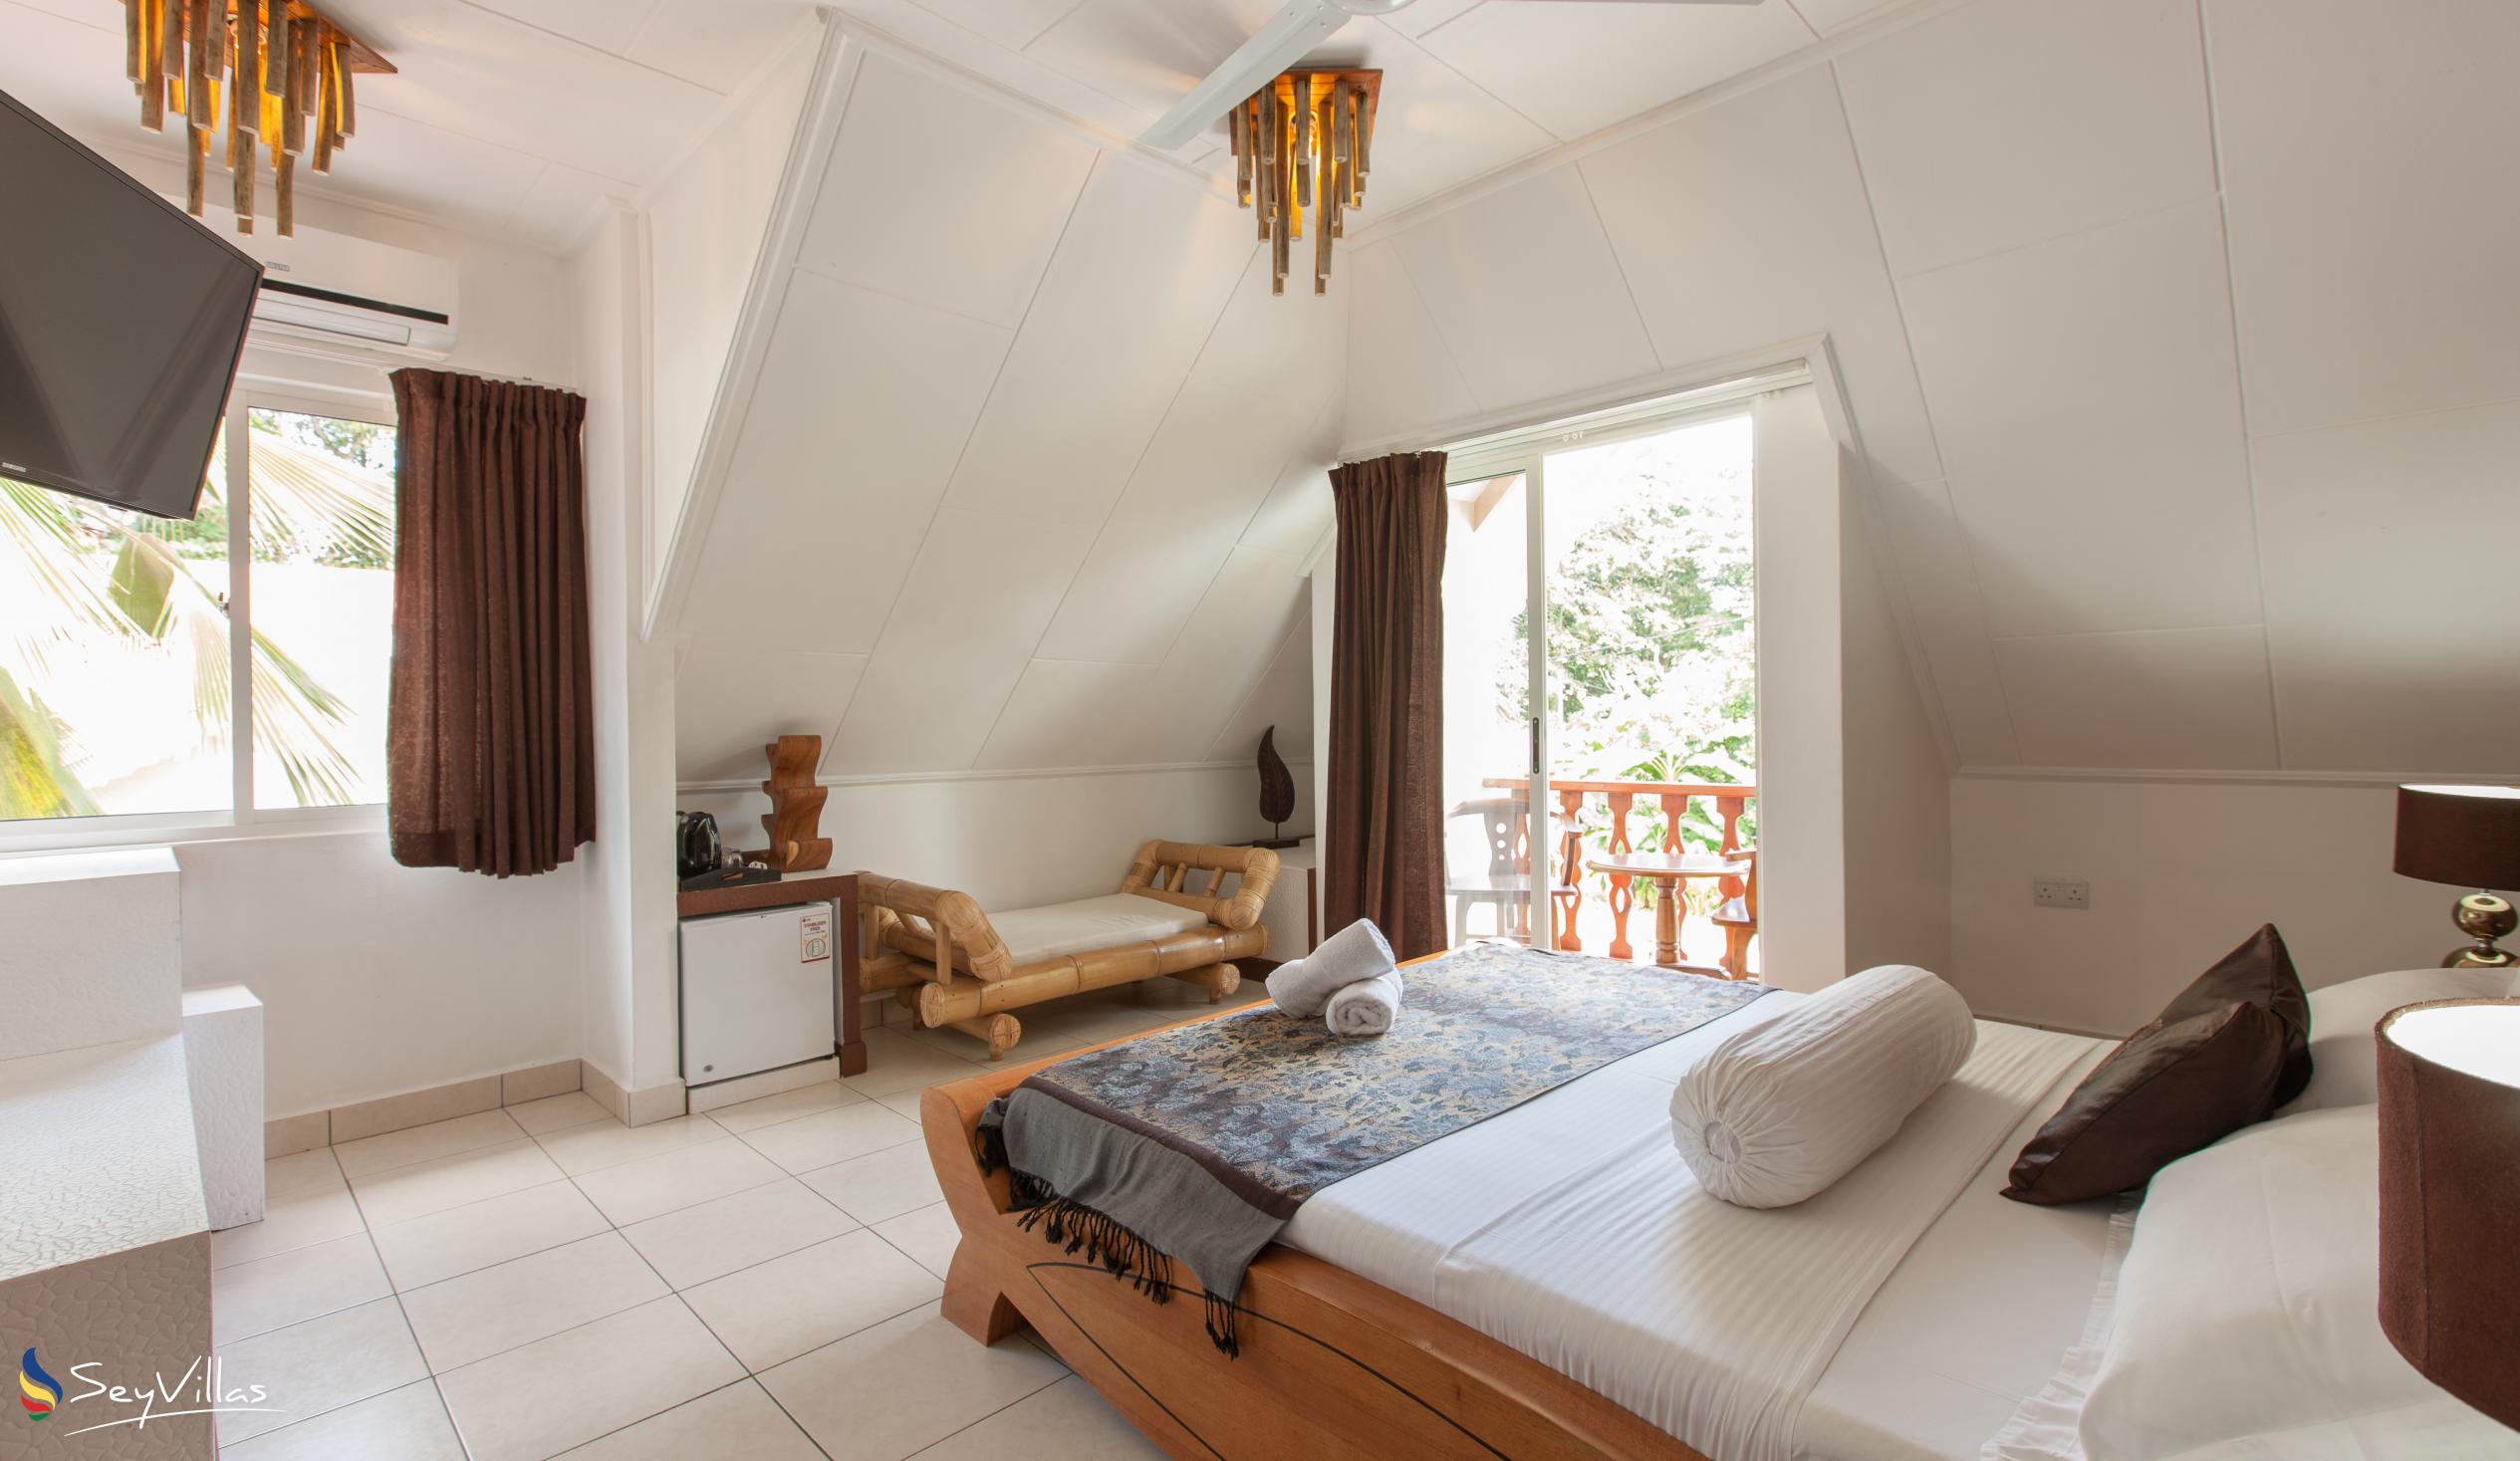 Photo 29: Villa Authentique - Standard Room - La Digue (Seychelles)